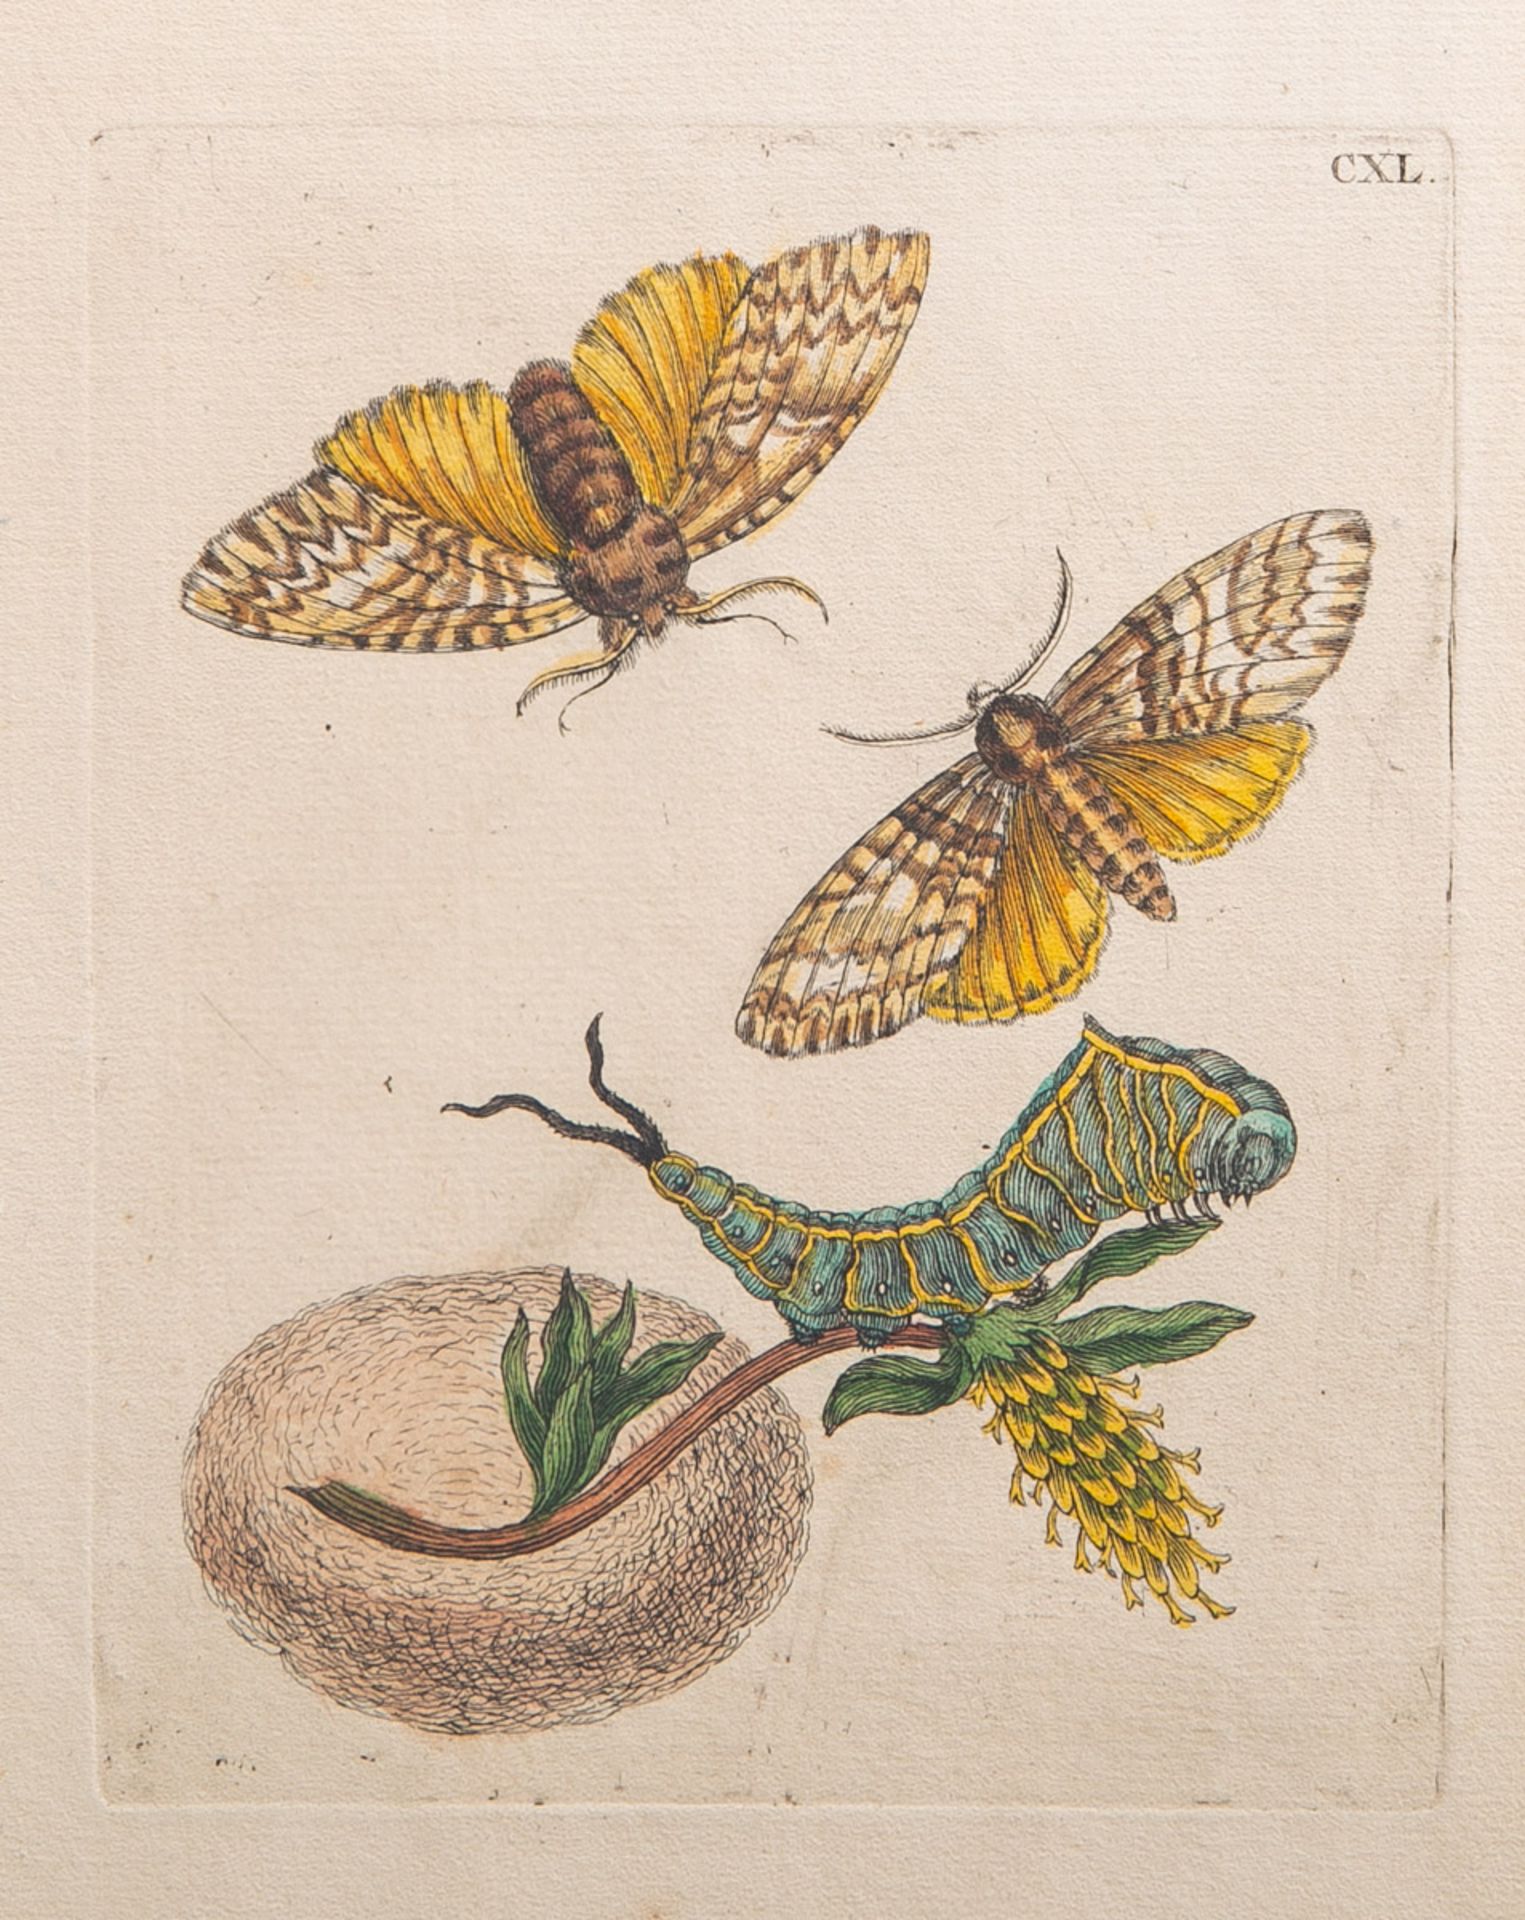 Merian, Maria Sibylla (1647 - 1717), Pflanzen- und Insektendarstellung, Blatt CXL